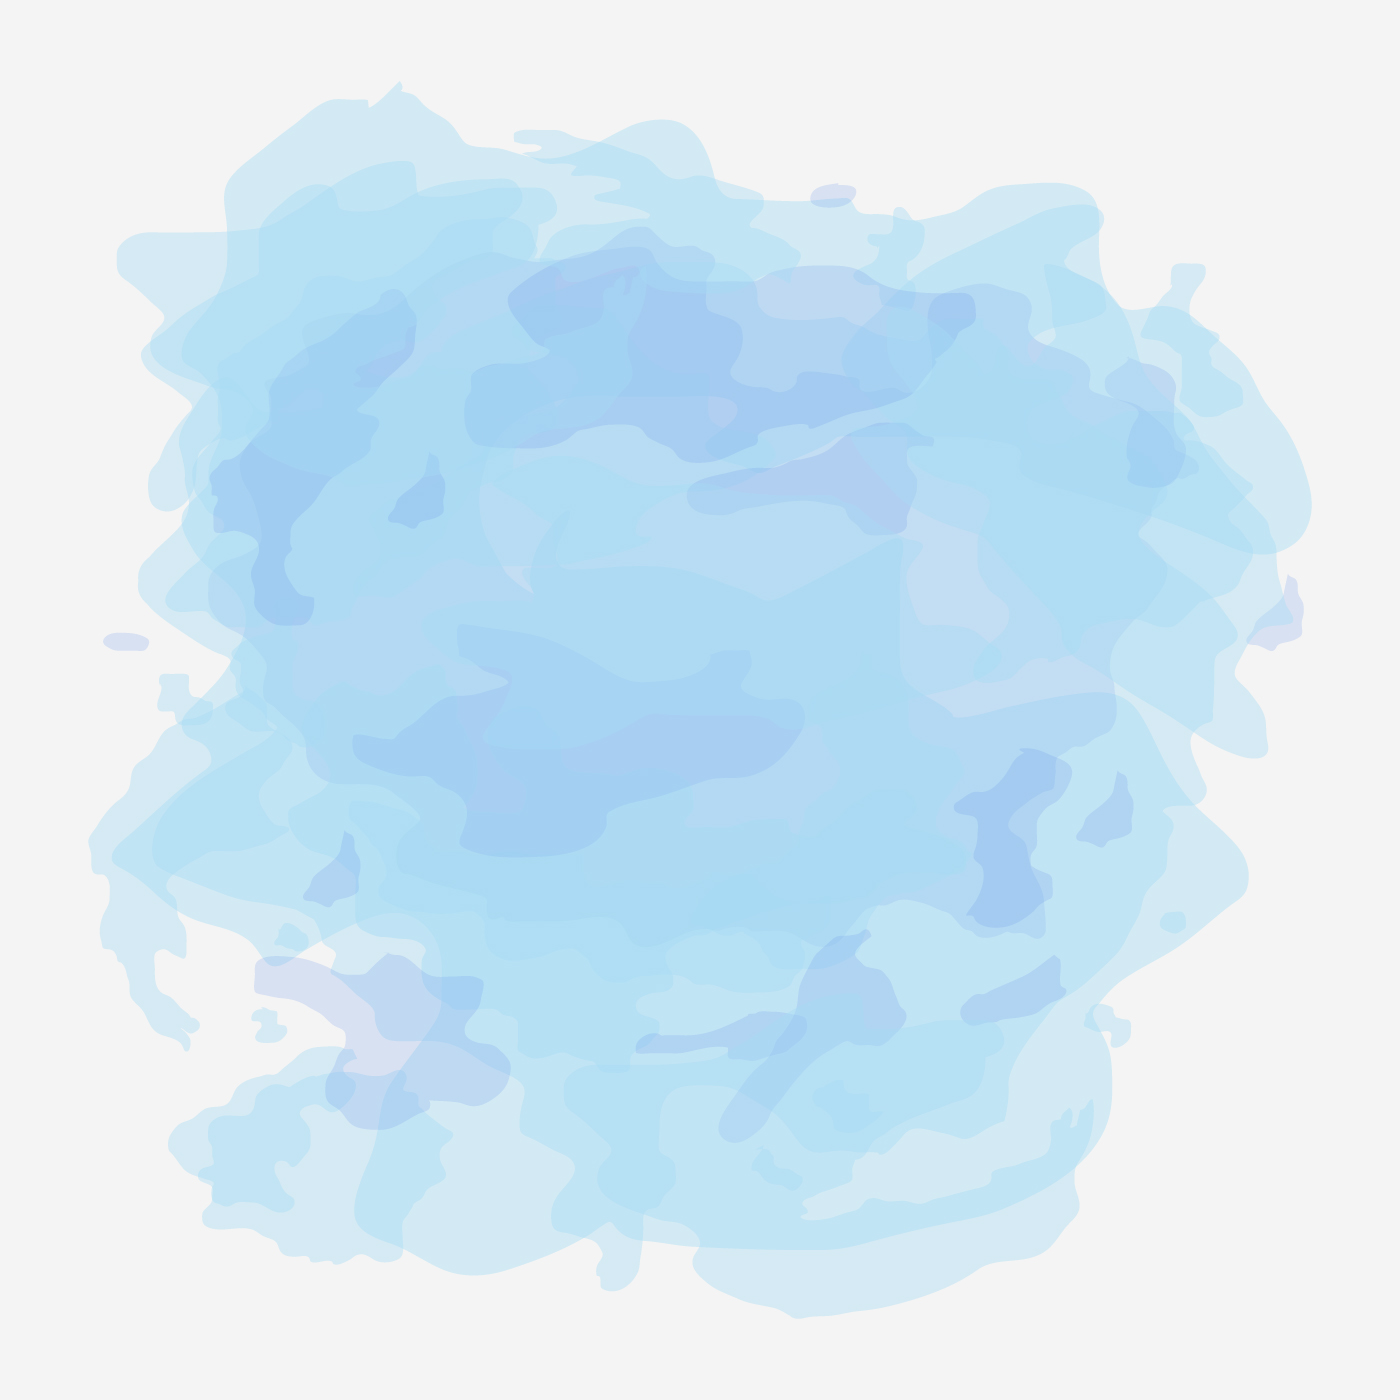 Bạn muốn tìm kiếm những tác phẩm nghệ thuật vector miễn phí với gam màu Pastel blue để trang trí cho những thiết kế của mình? Hãy đến với những bức tranh Free pastel blue background vector art đầy tinh tế và độc đáo.